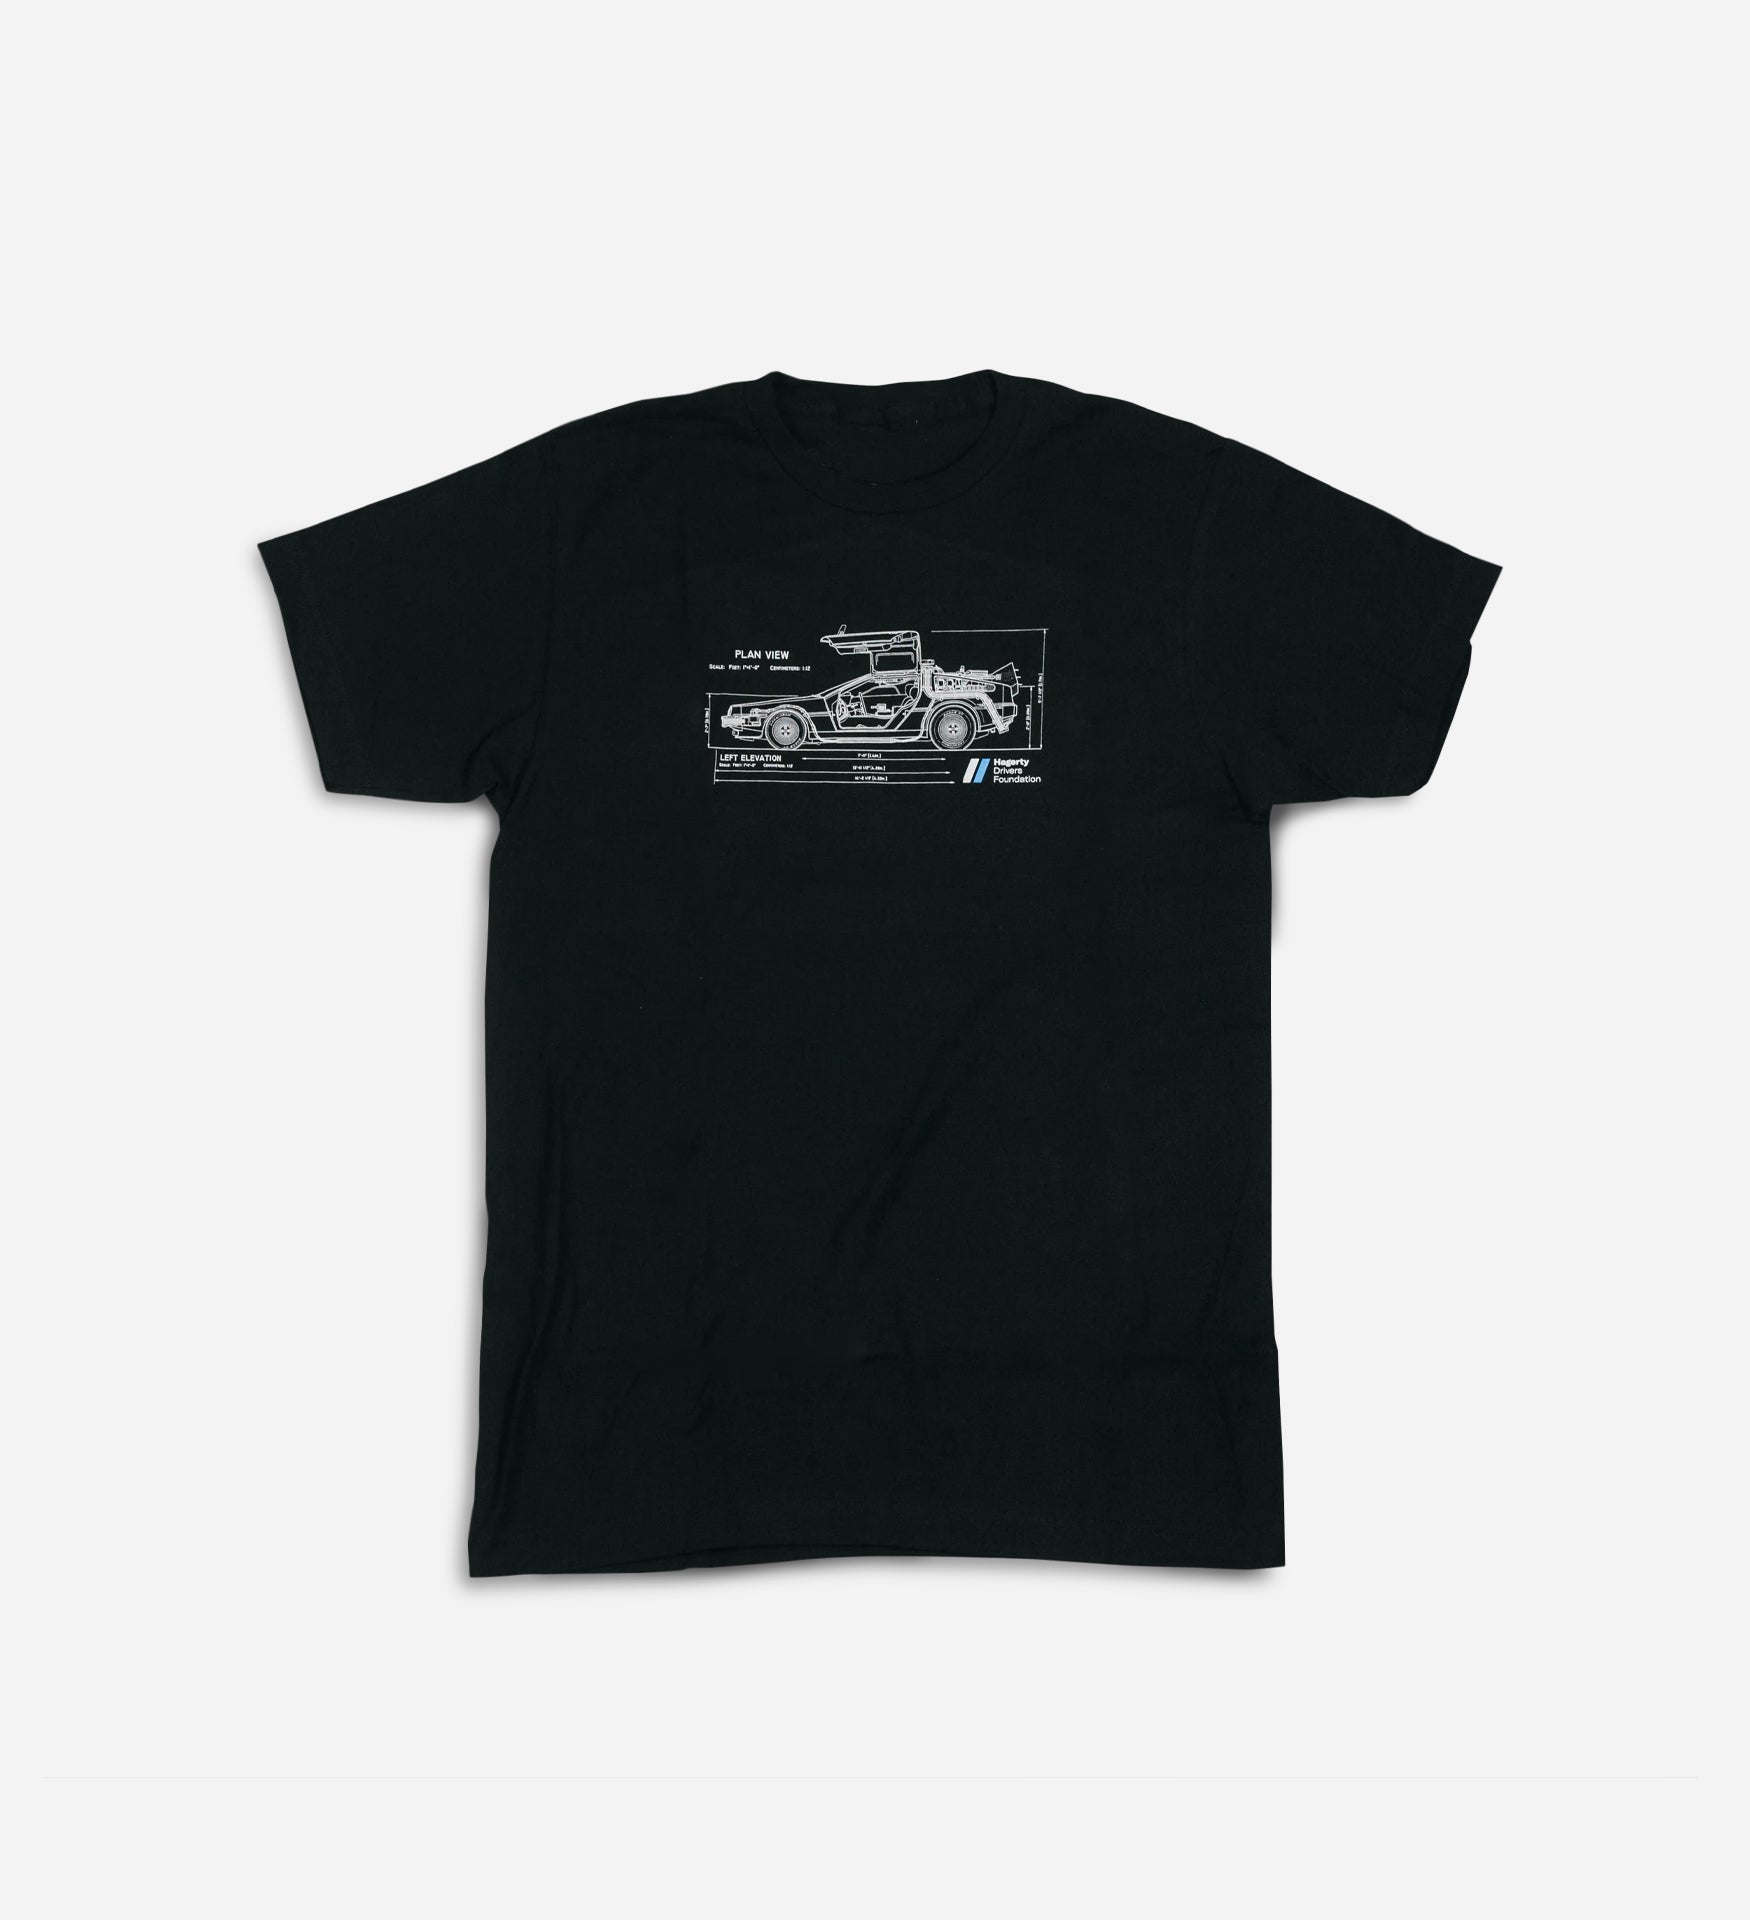 DeLorean T-shirt